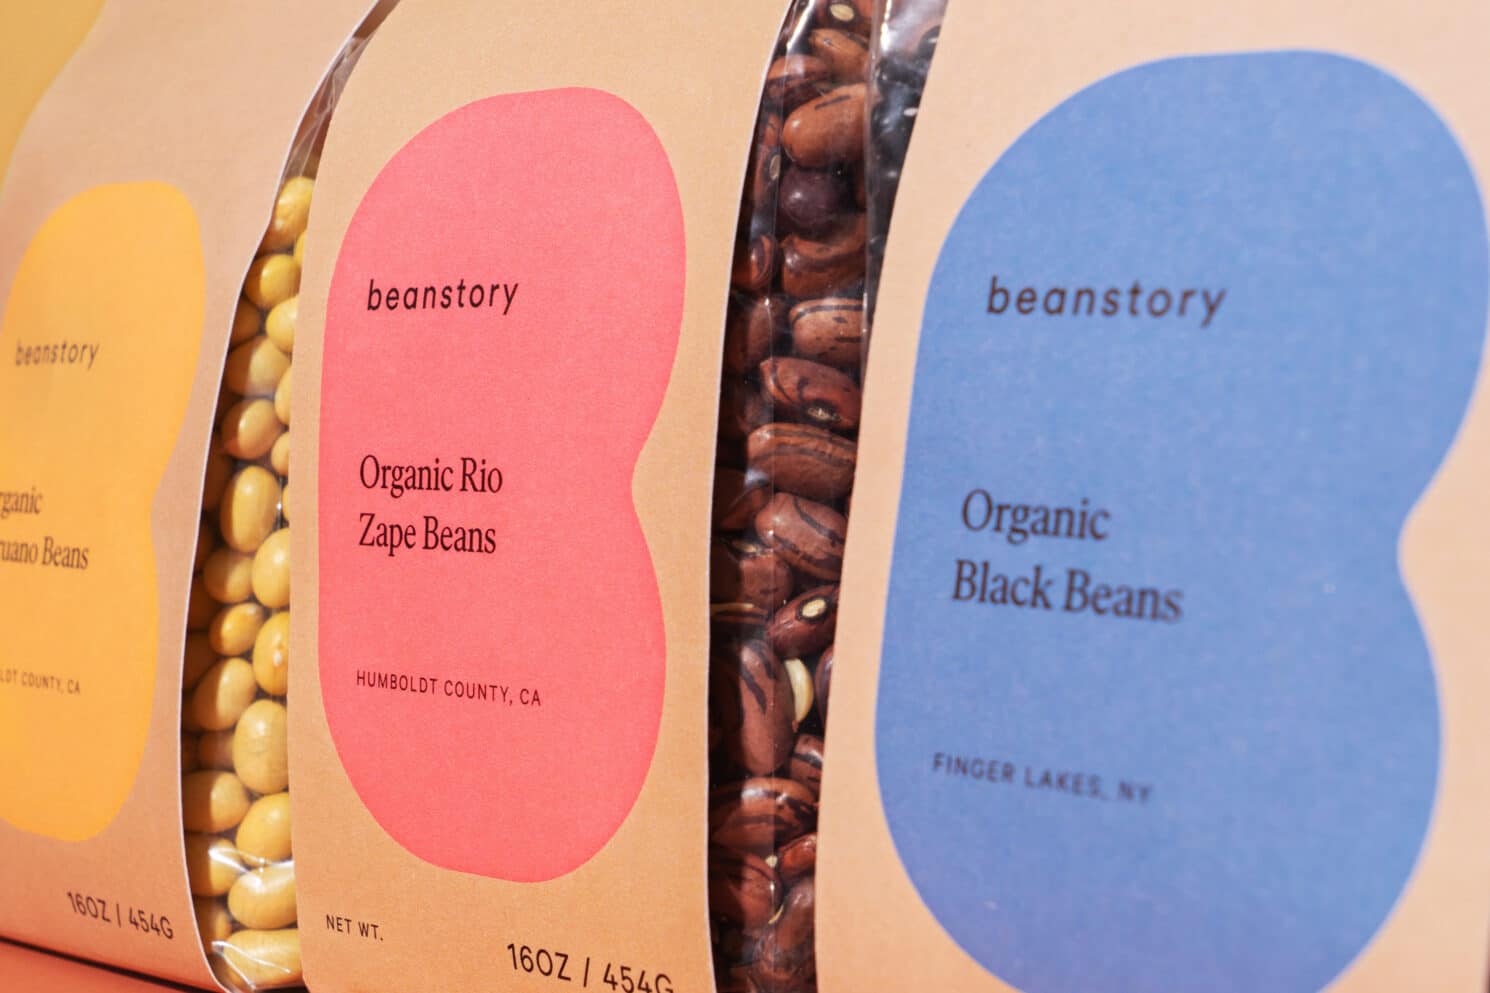 Visual Identity für den Bohnenvertrieb Beanstory: Details des Packaging Design drei verschiedener Bohnensorten. Auf der Papierverpackung ist im Hintergrund immer das B in Bohnenform zu sehen, aber für jede Sorte eine andere Farbe: Links in Gelb für Peruano Bohnen, in der Mitte rosa für Zape Bohnen und rechts blau für Schwarze Bohnen.